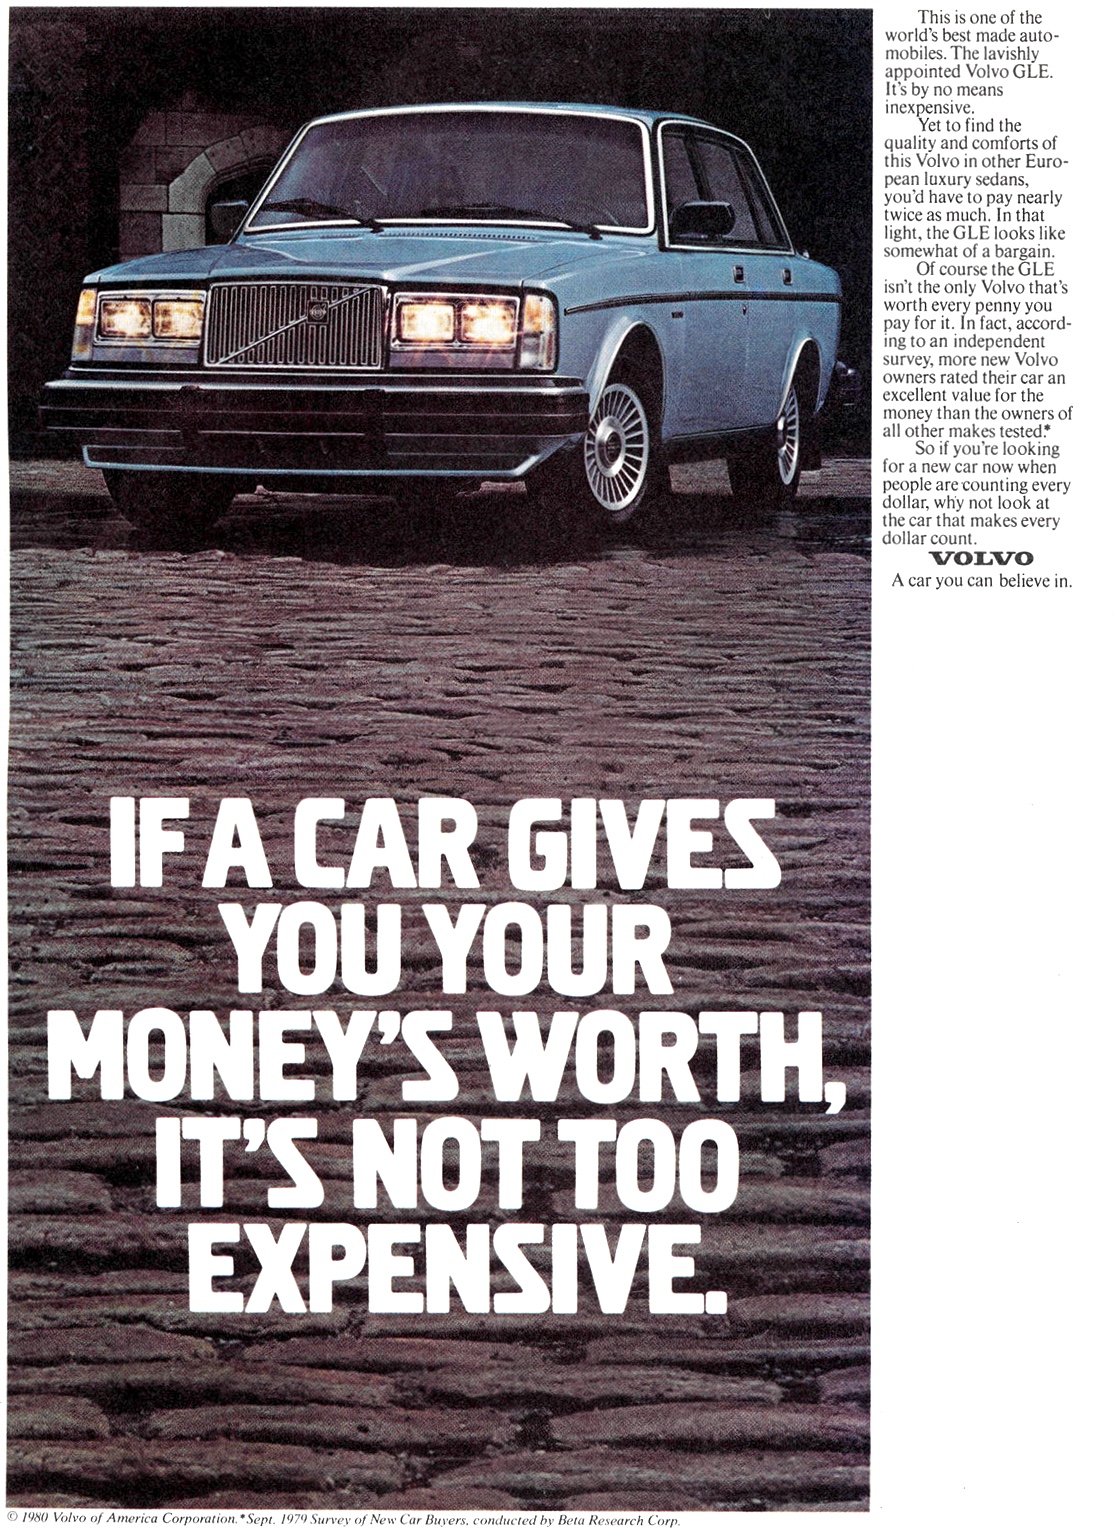 1981 Volvo 244 264 GLE 1